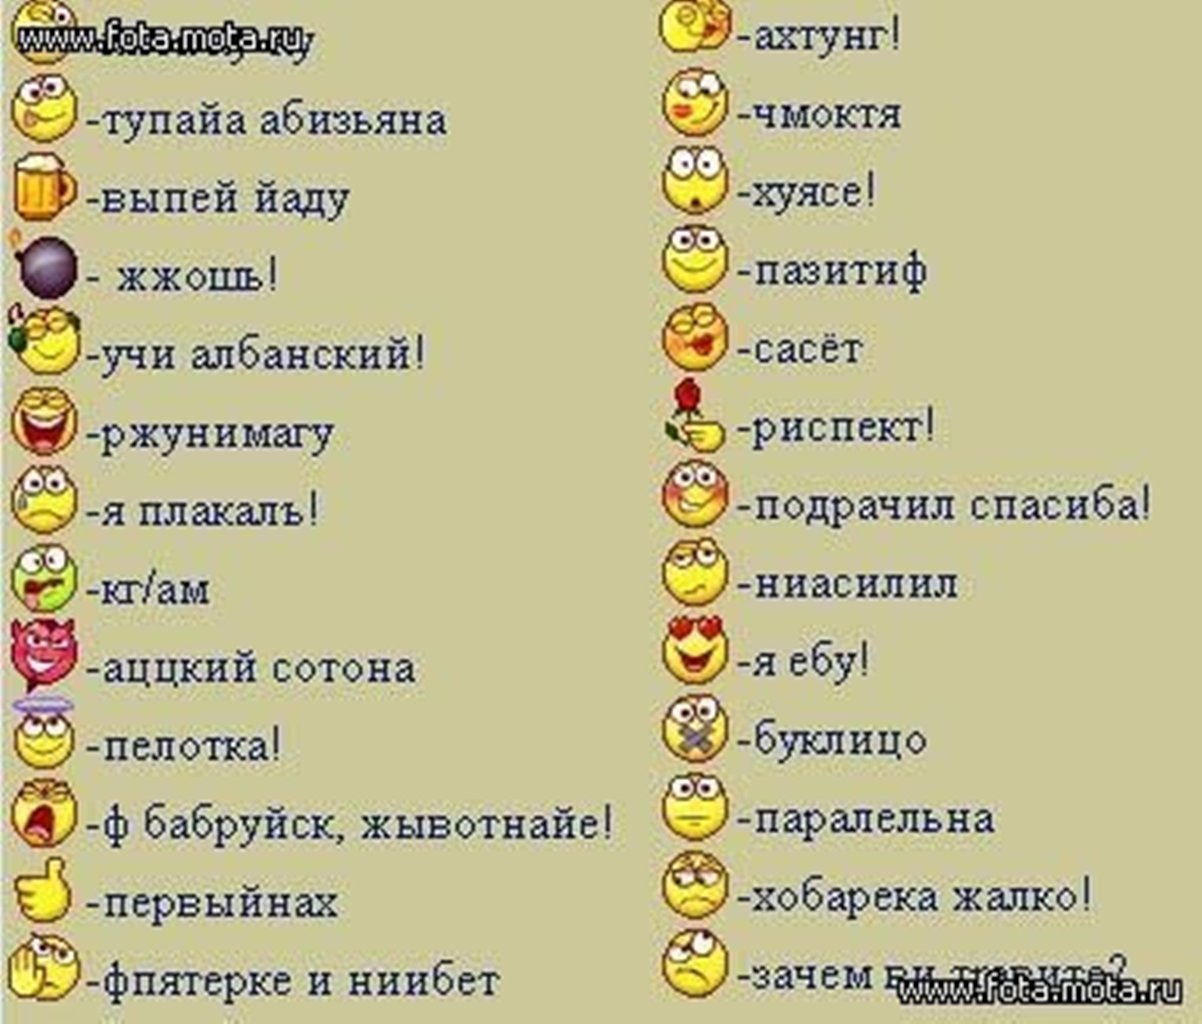 Расшифровка смайликов в телеграмме на русском фото 21